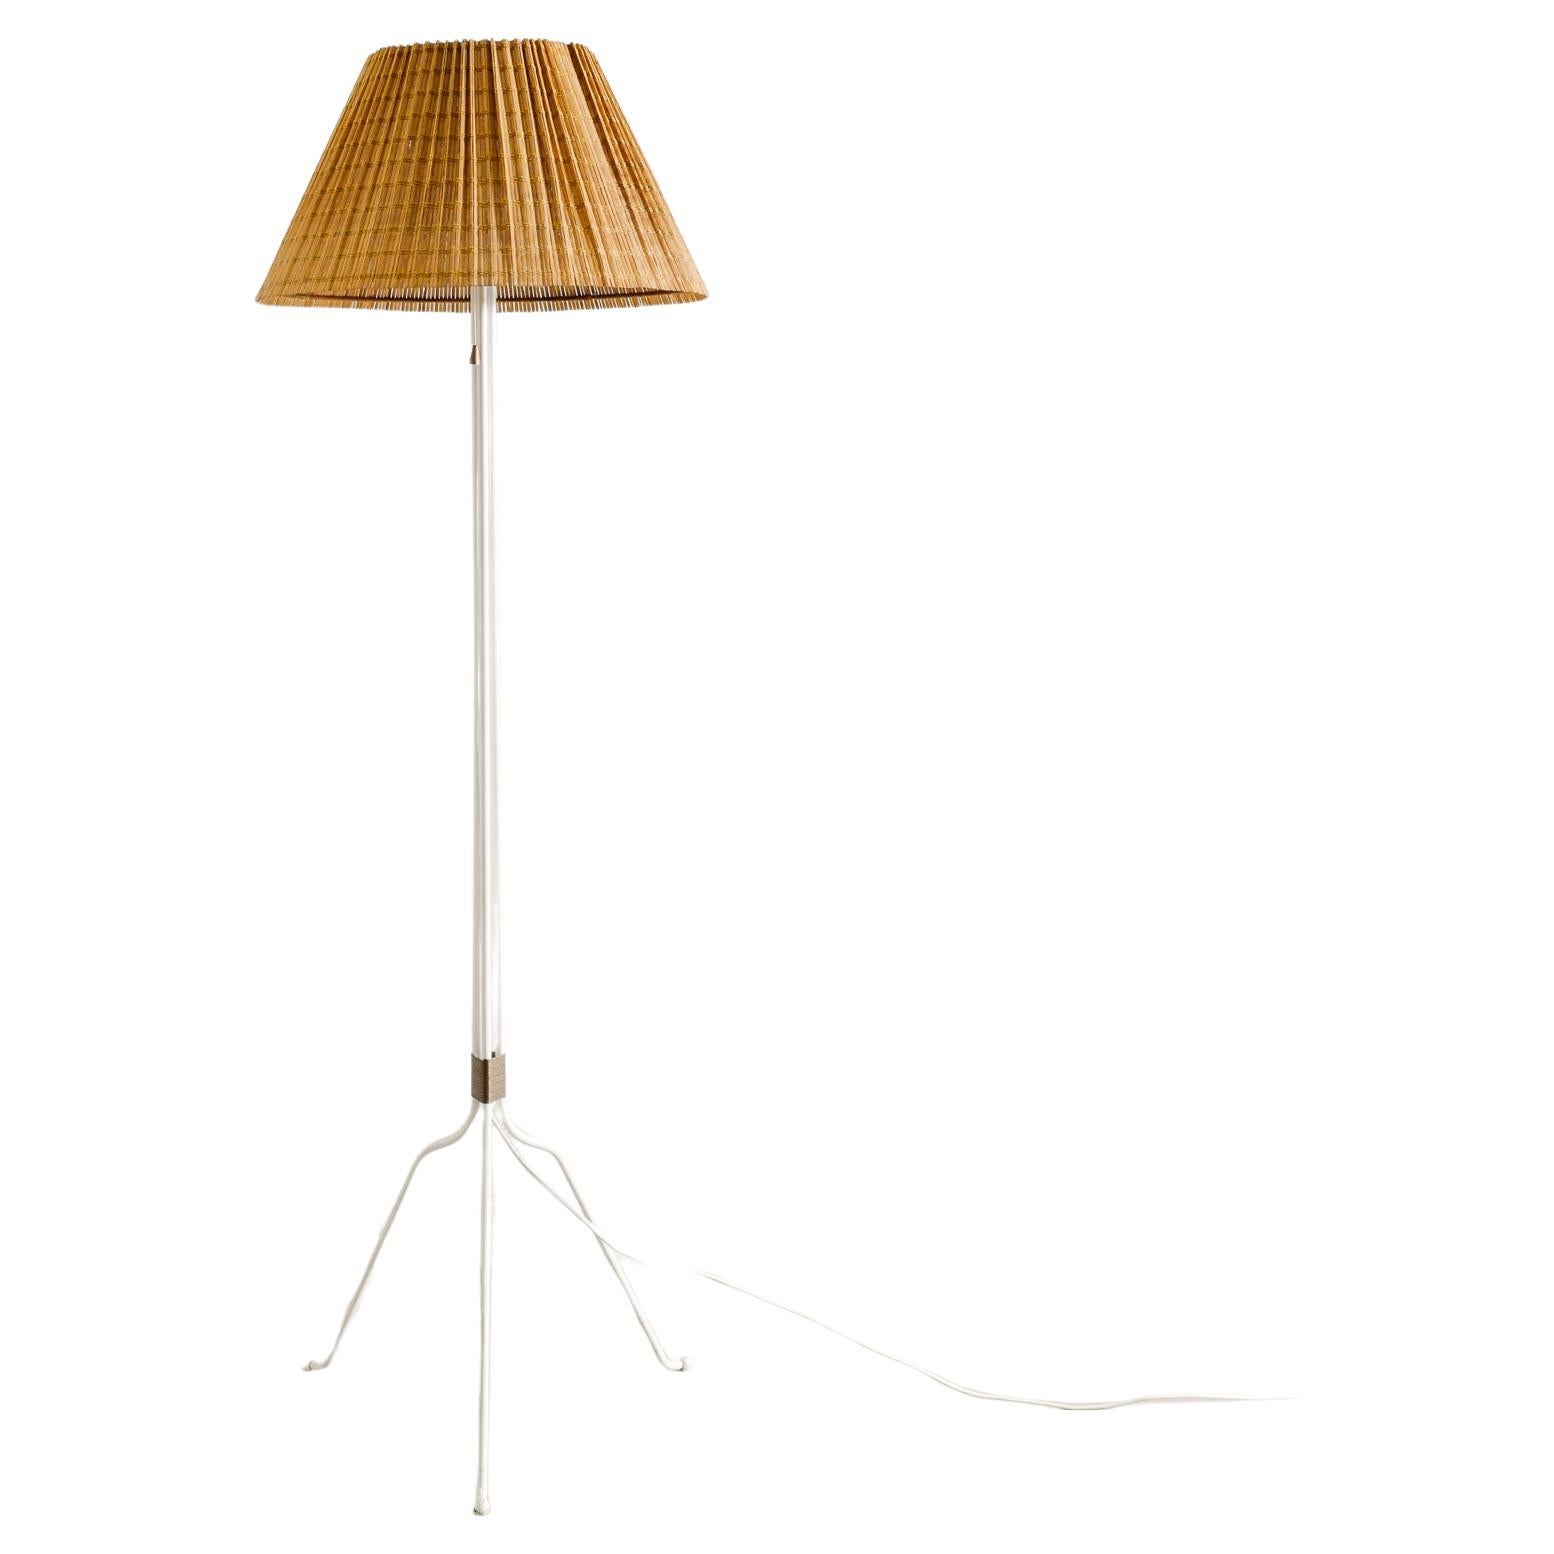 Lisa Johansson Papé "30-058" Mid Century Floor Lamp Produced by Orno Oy, 1940s